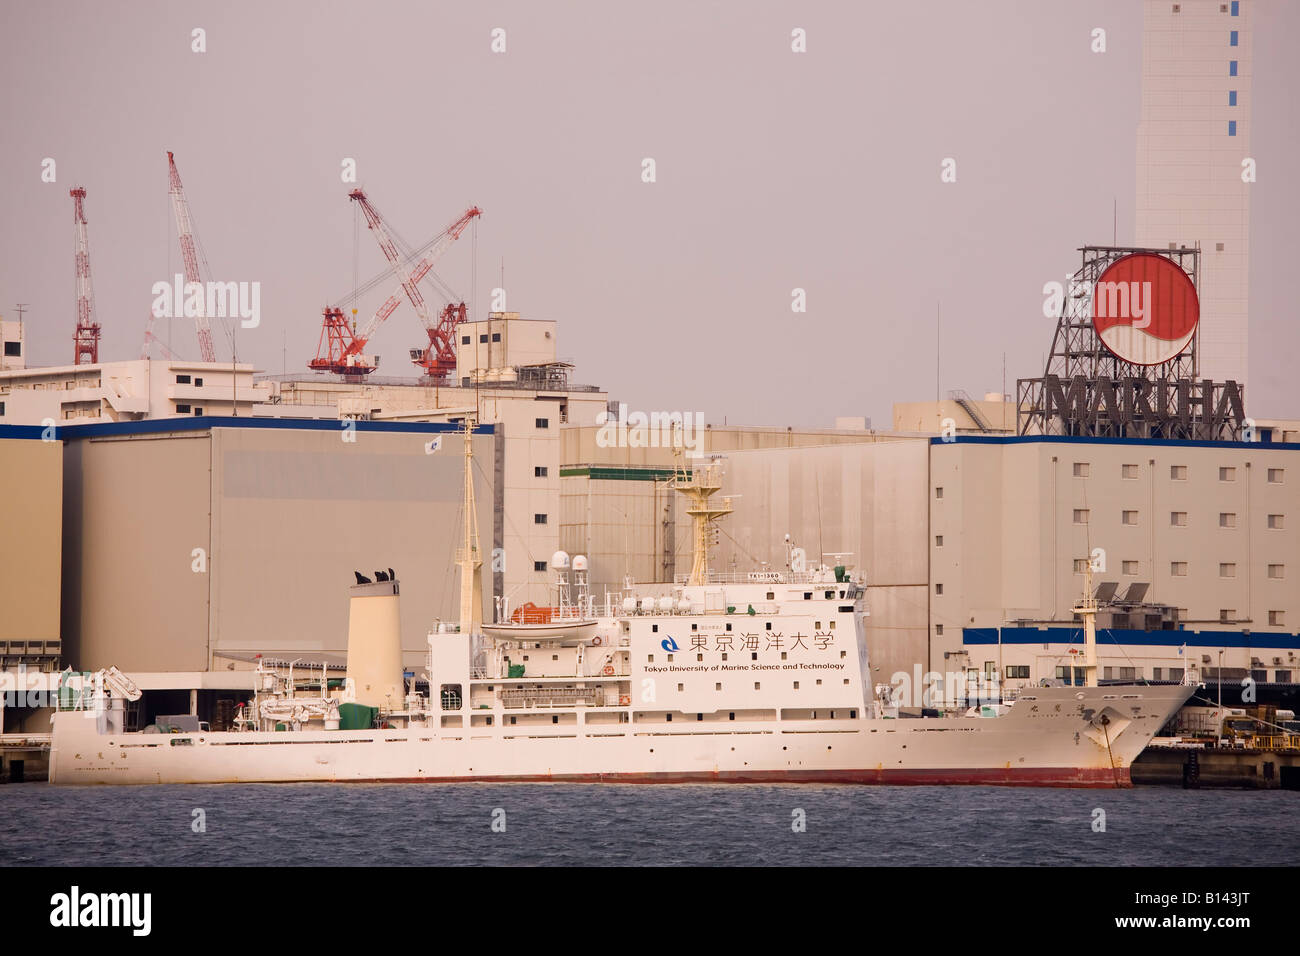 In der Bucht von Tokio, Japan ist ein Forschungsschiff der Tokyo University of marine Science und Technologie angedockt. Stockfoto